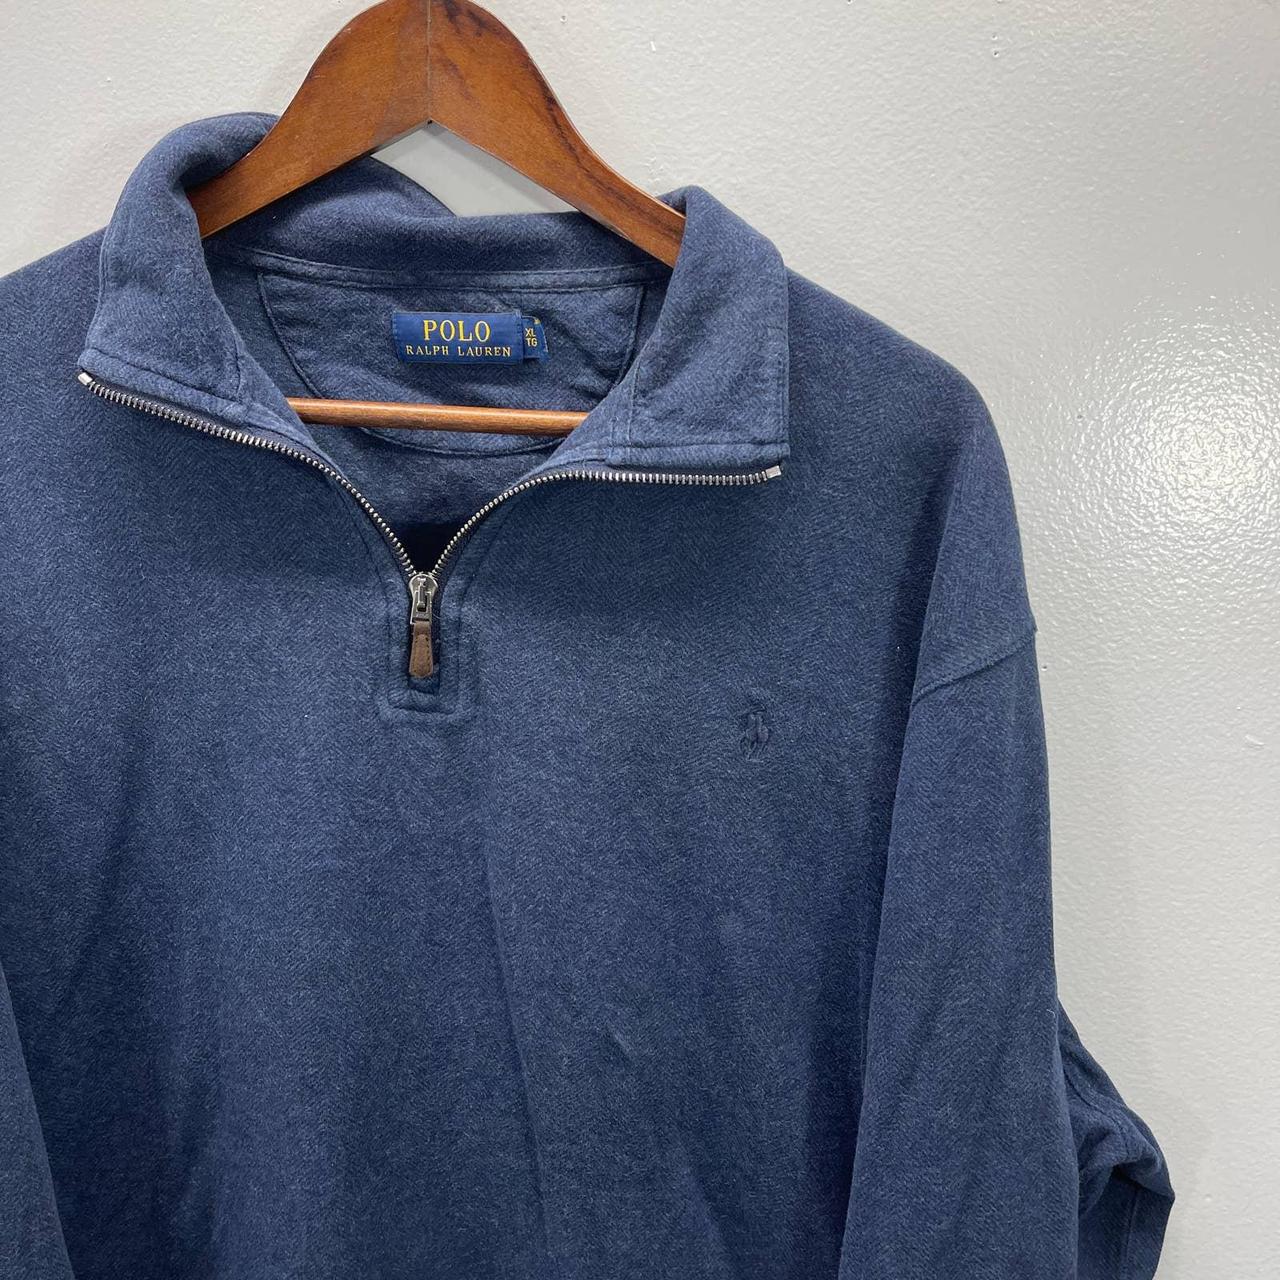 Polo Ralph Lauren 1/4 Zip Pullover Sweatshirt Adult... - Depop